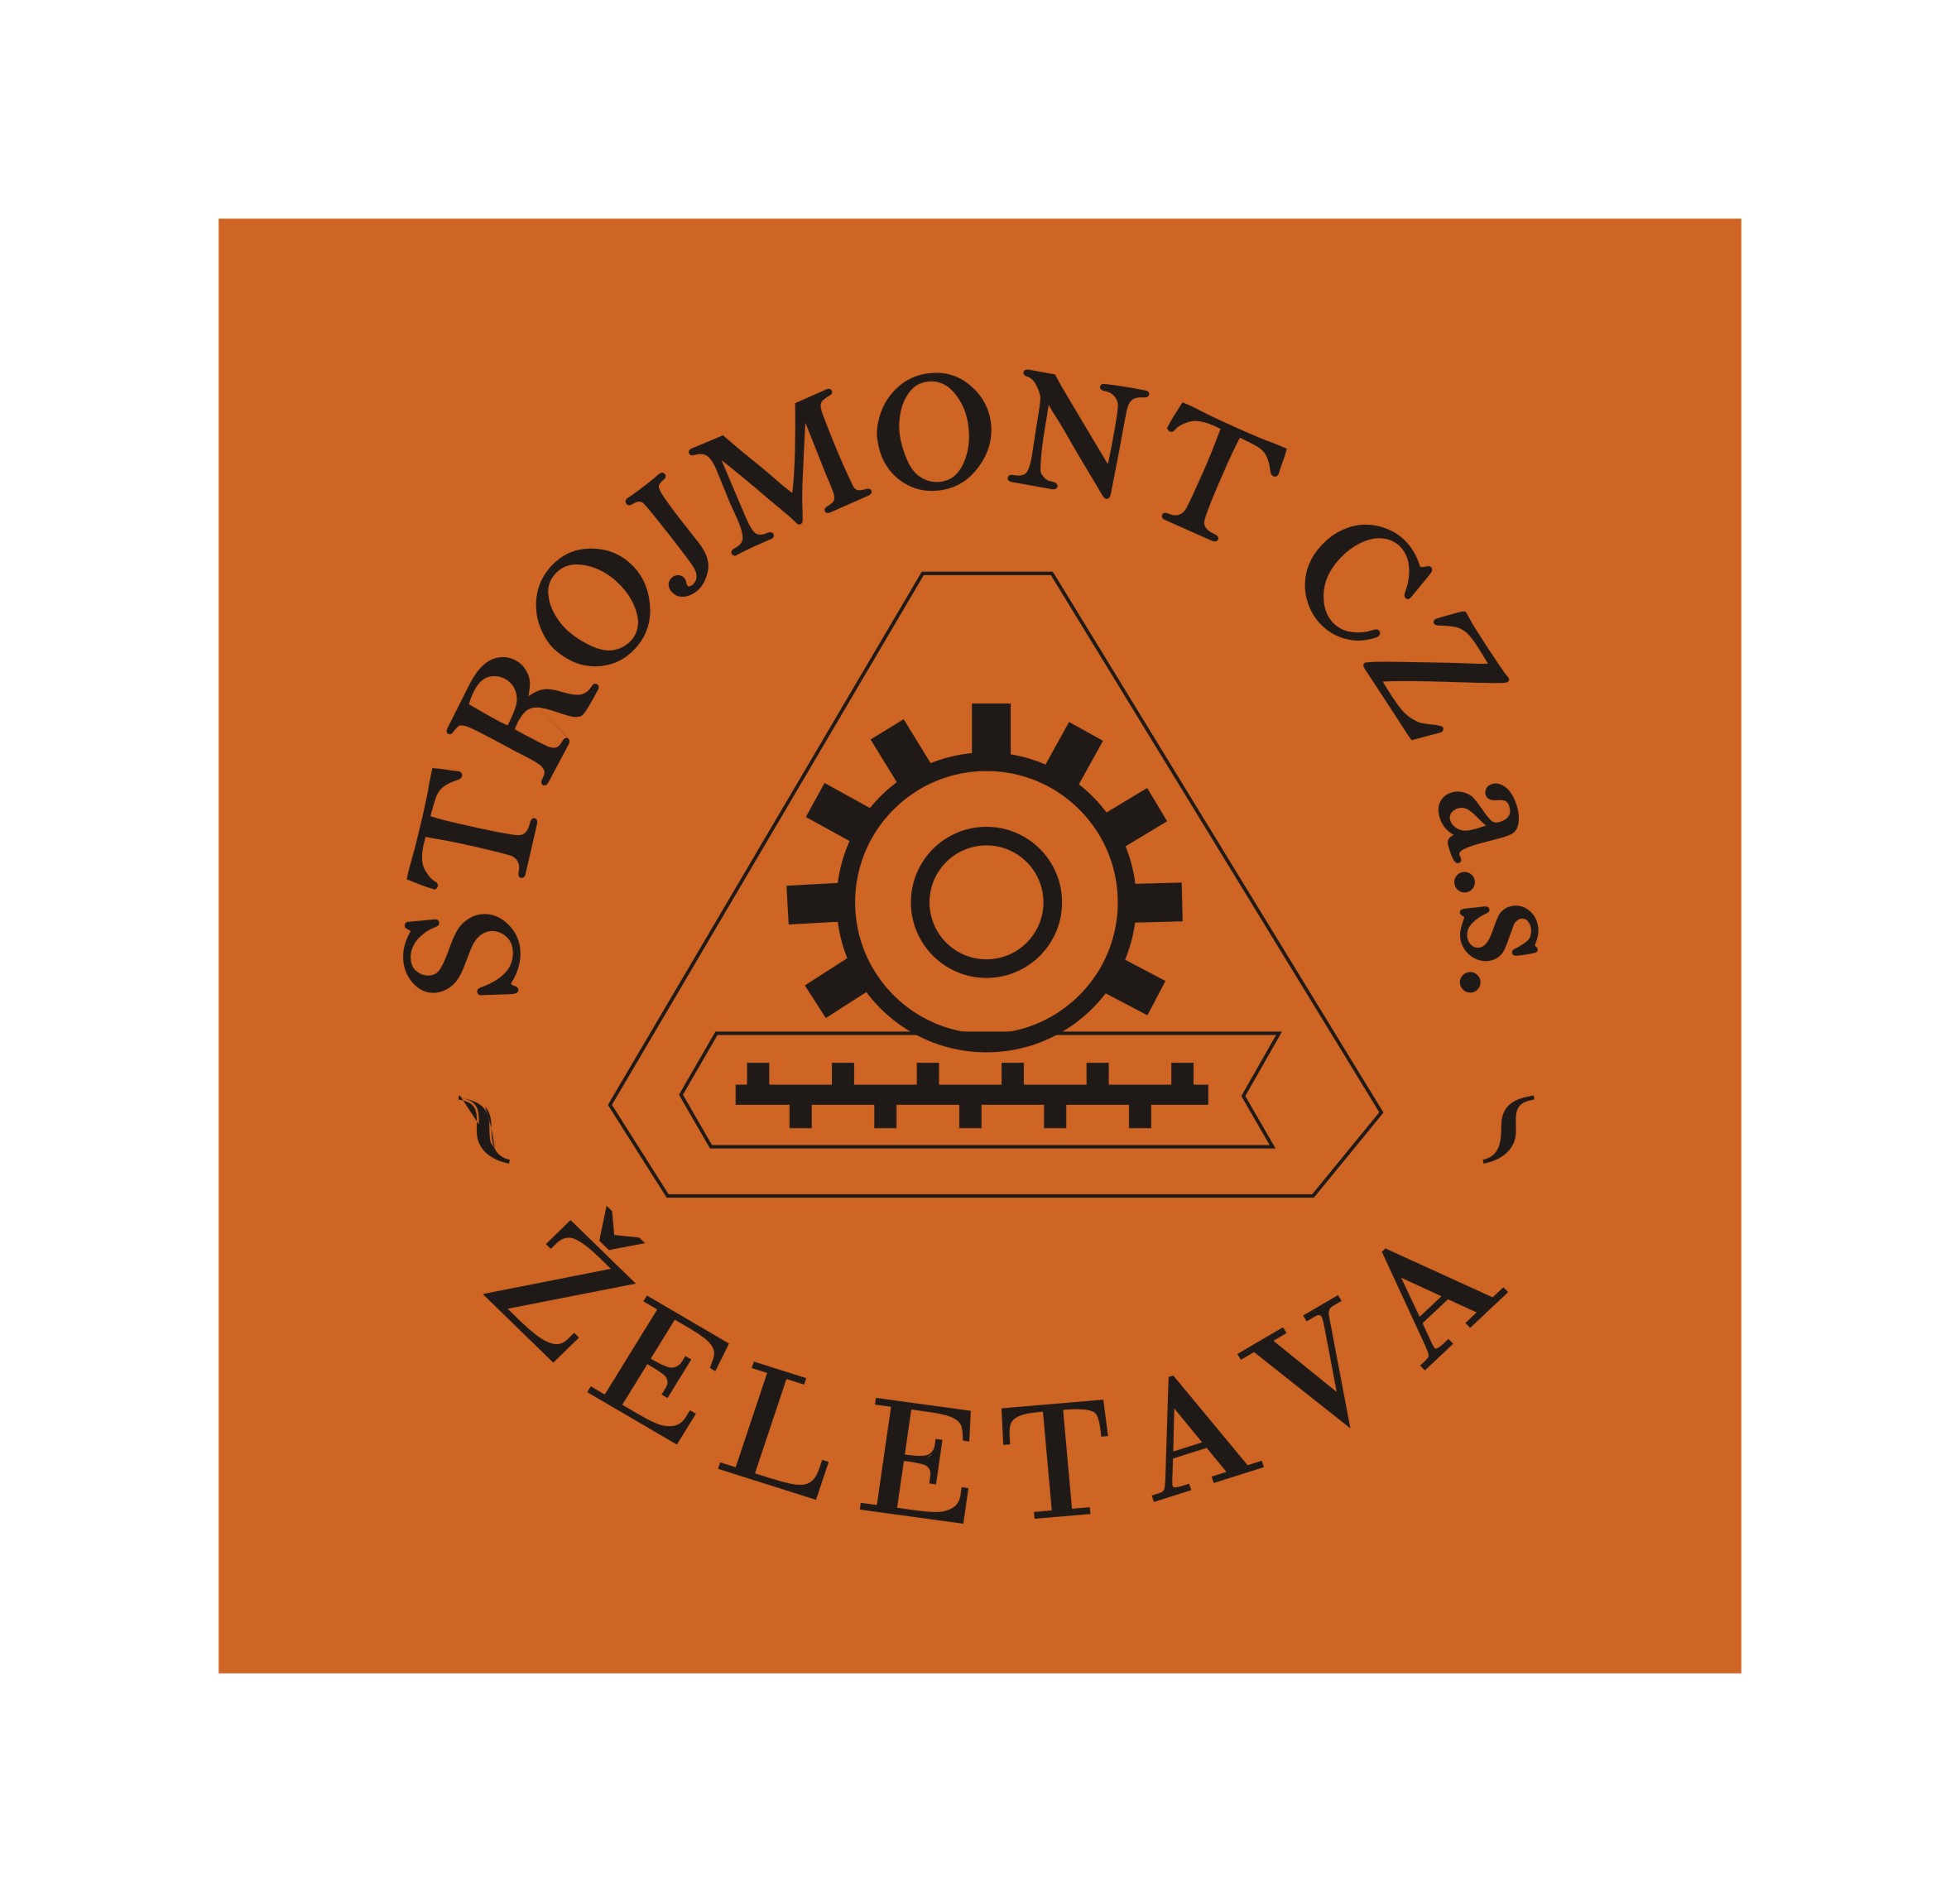 Strojmont logo.jpg